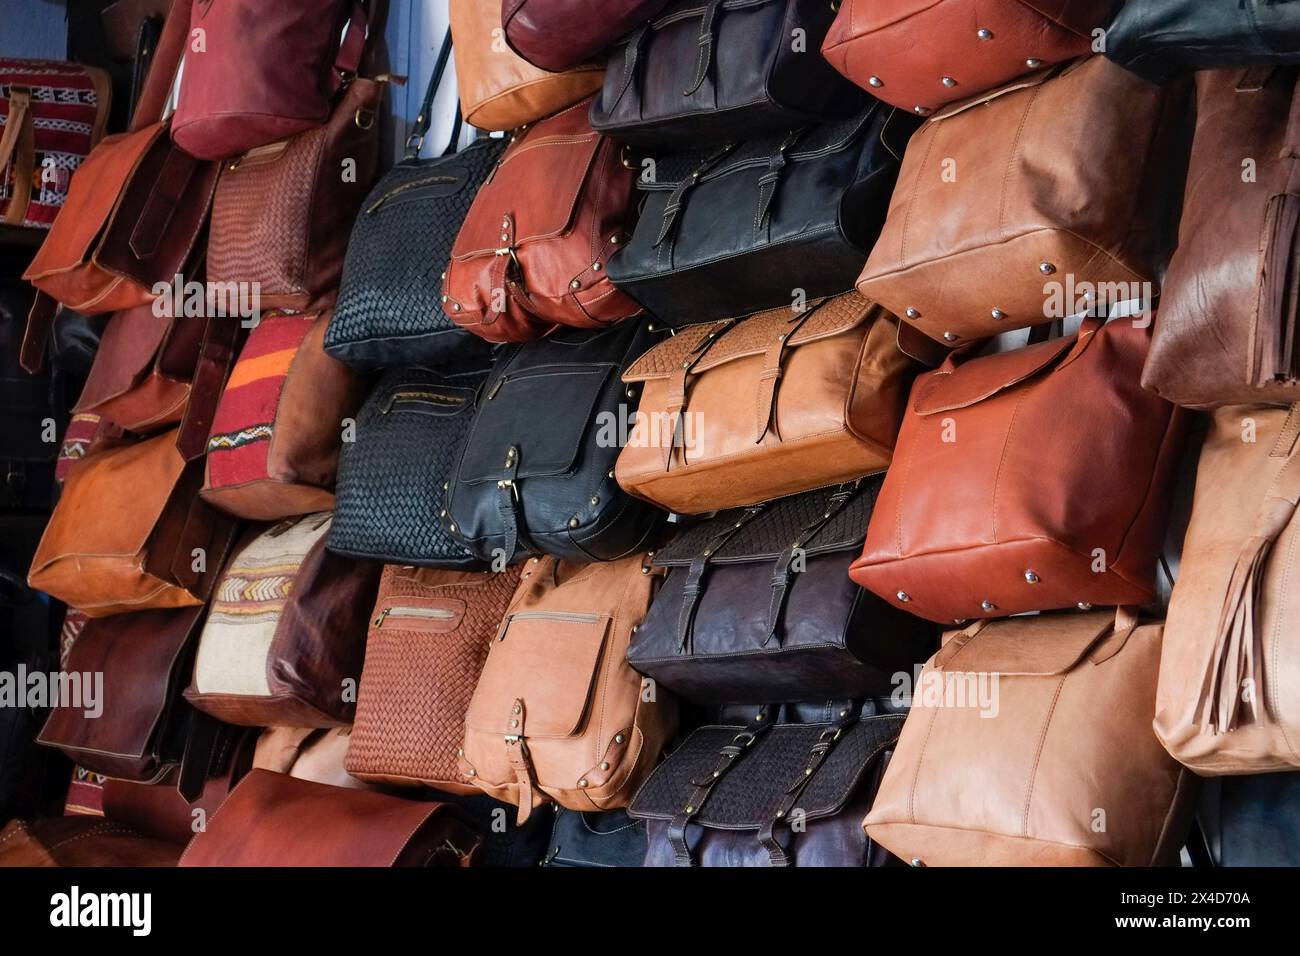 FES, Marocco. Bellissime borse e borse in vendita nella zona conciaria del suk. Foto Stock